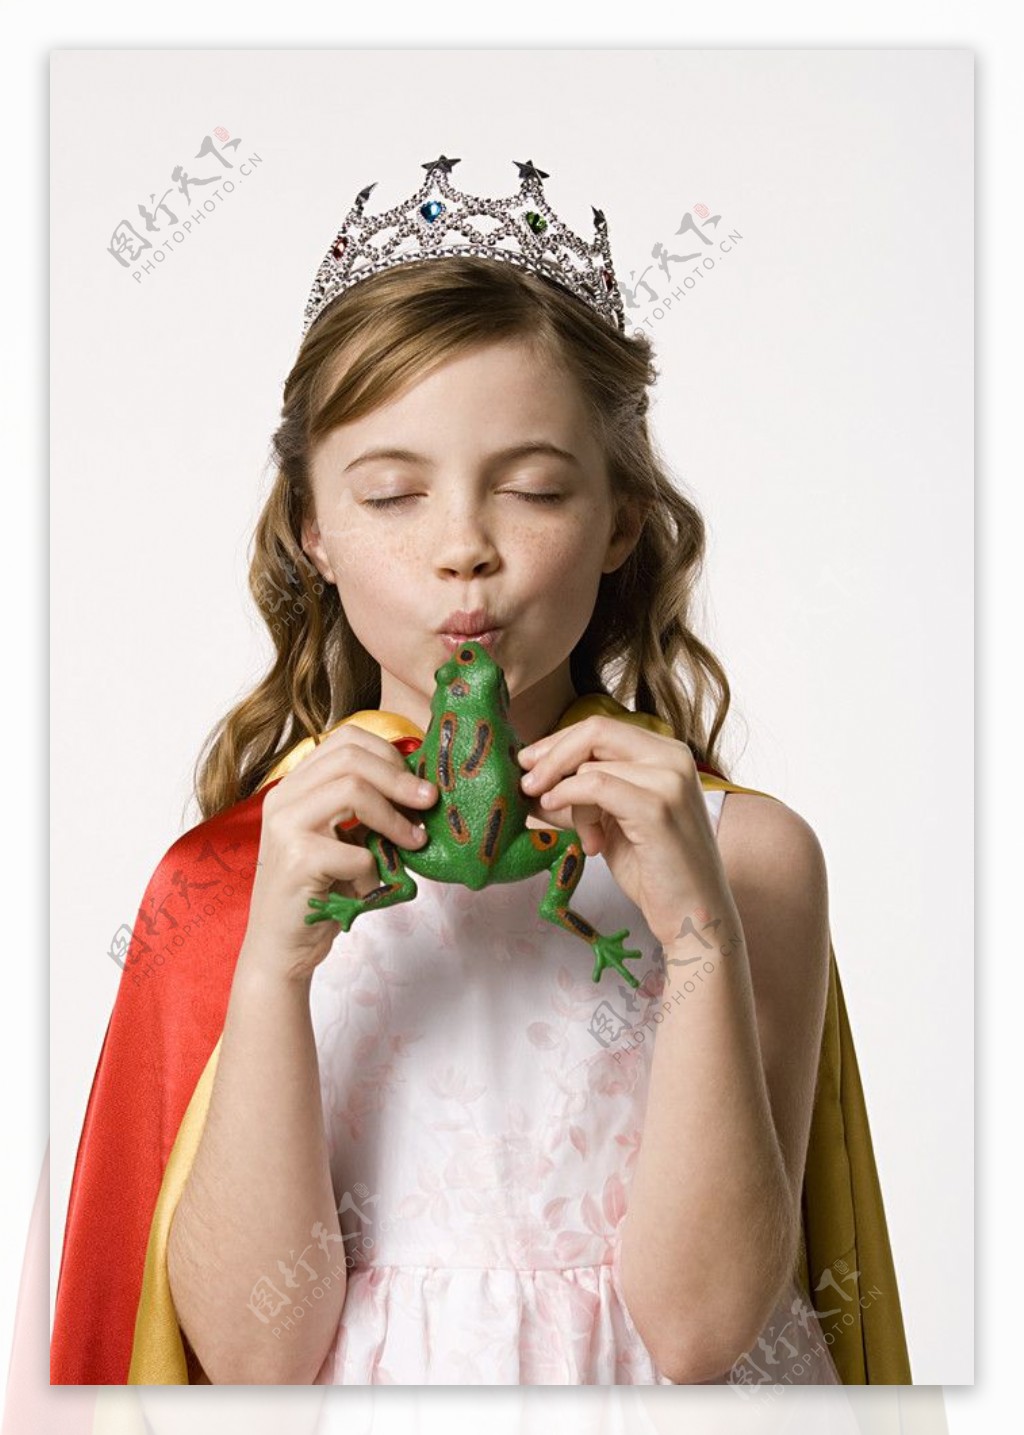 穿着古装吹青蛙的优雅小女孩图片